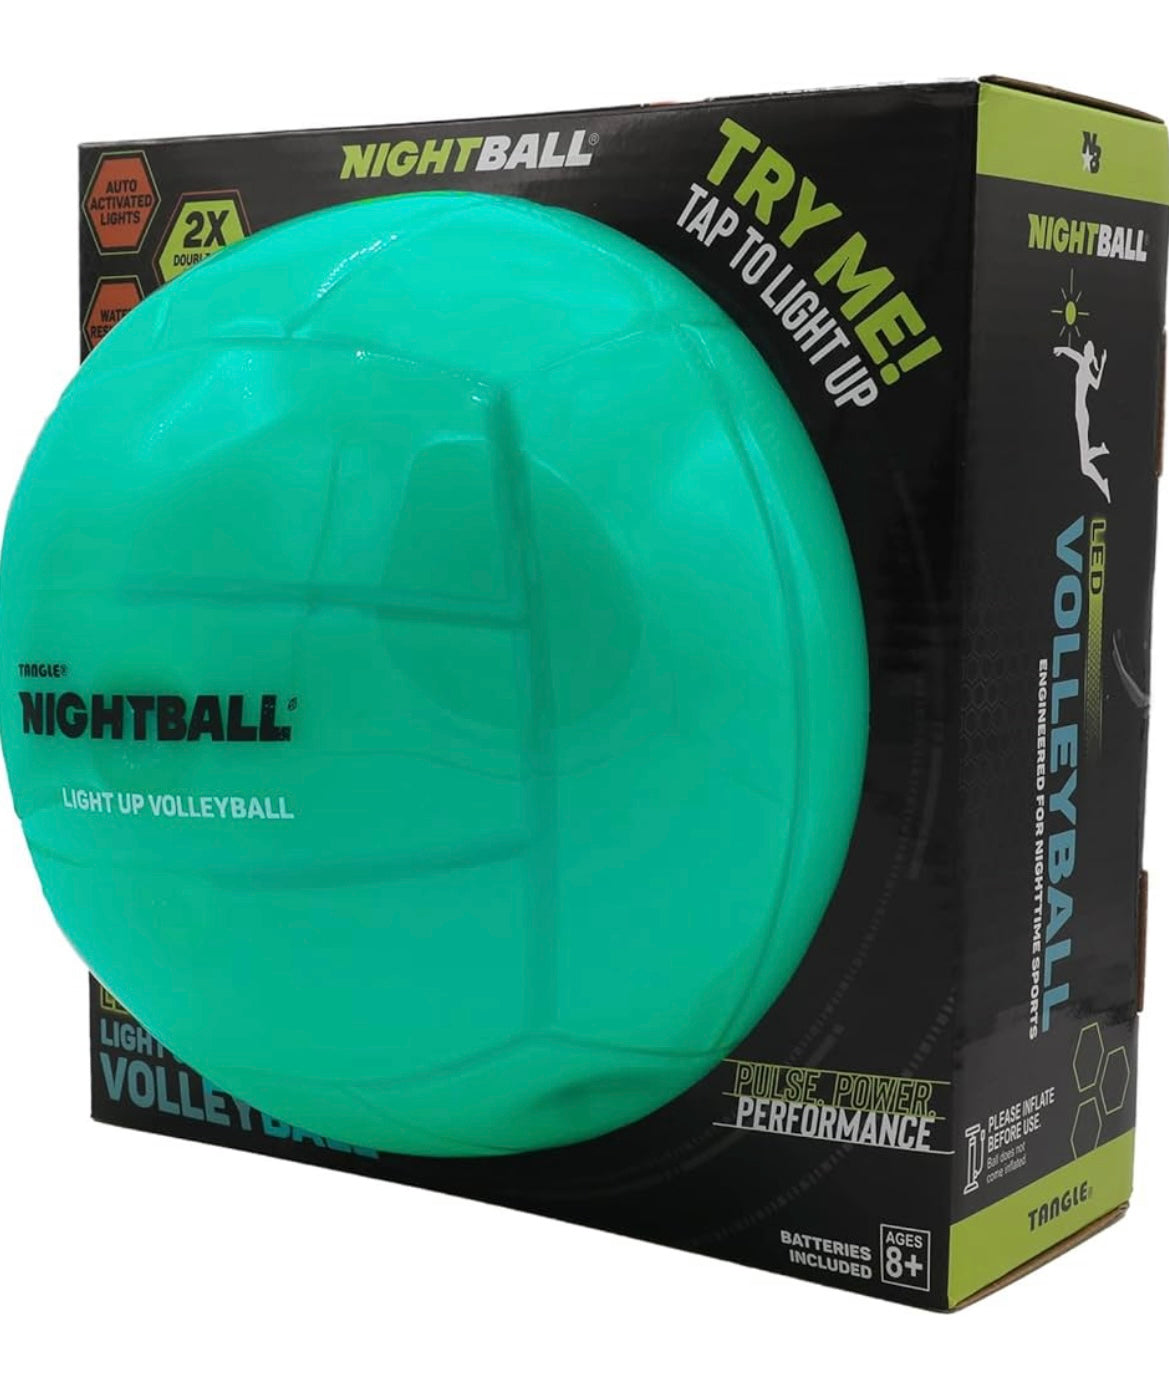 Nightball Volleyball